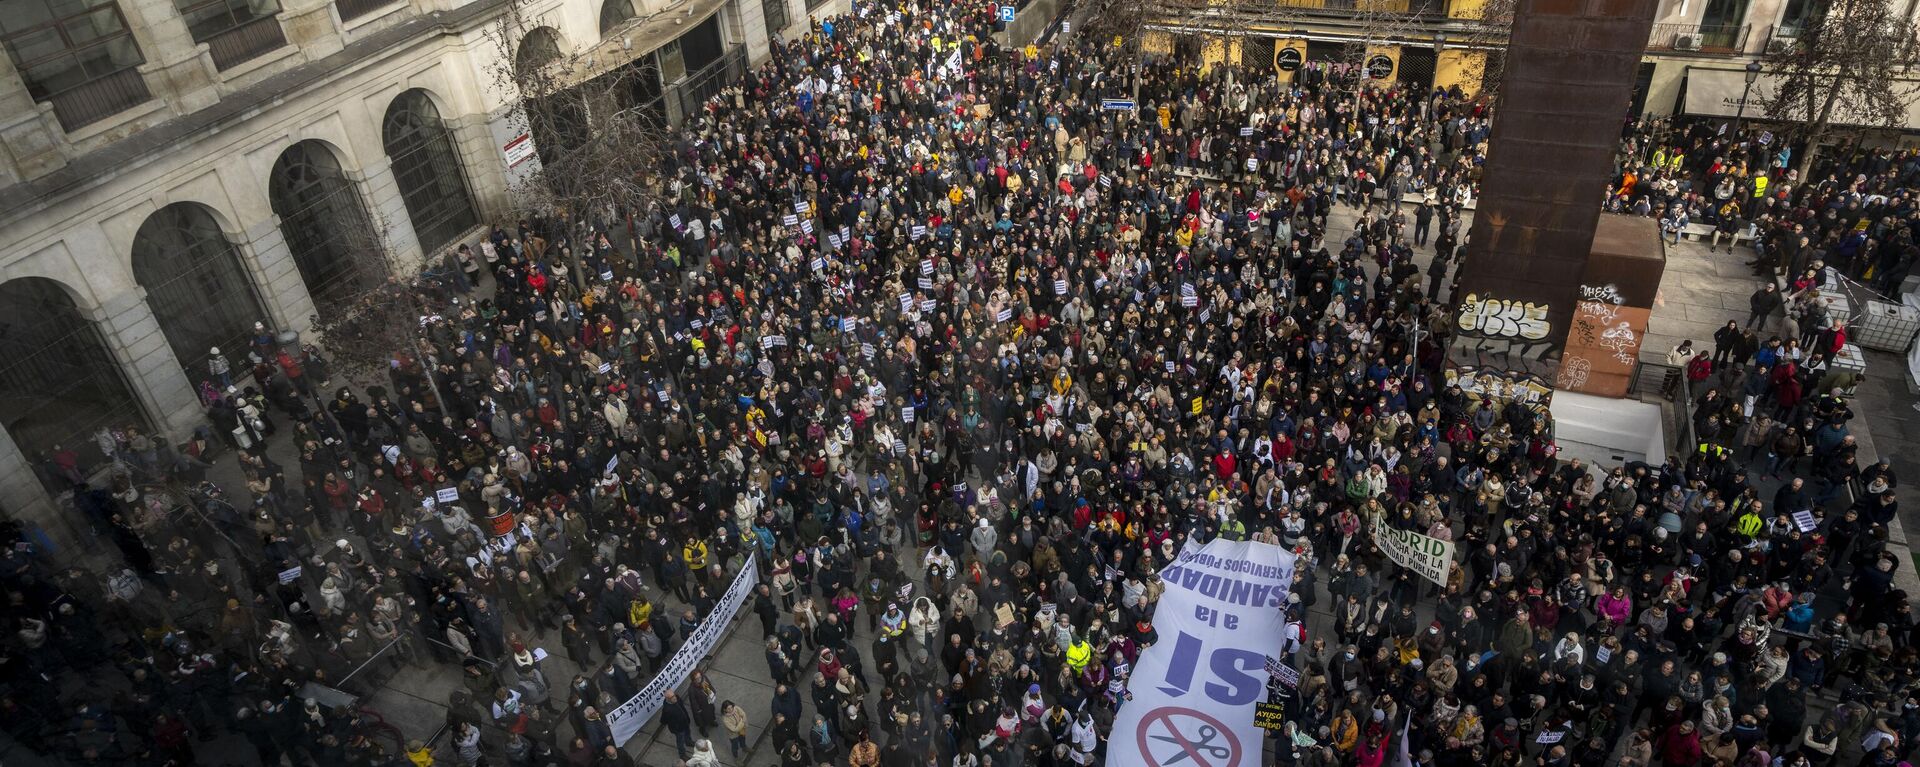 Personas se reúnen durante una protesta en apoyo de la sanidad pública en Madrid, España, el 15 de enero de 2023 - Sputnik Mundo, 1920, 01.03.2023